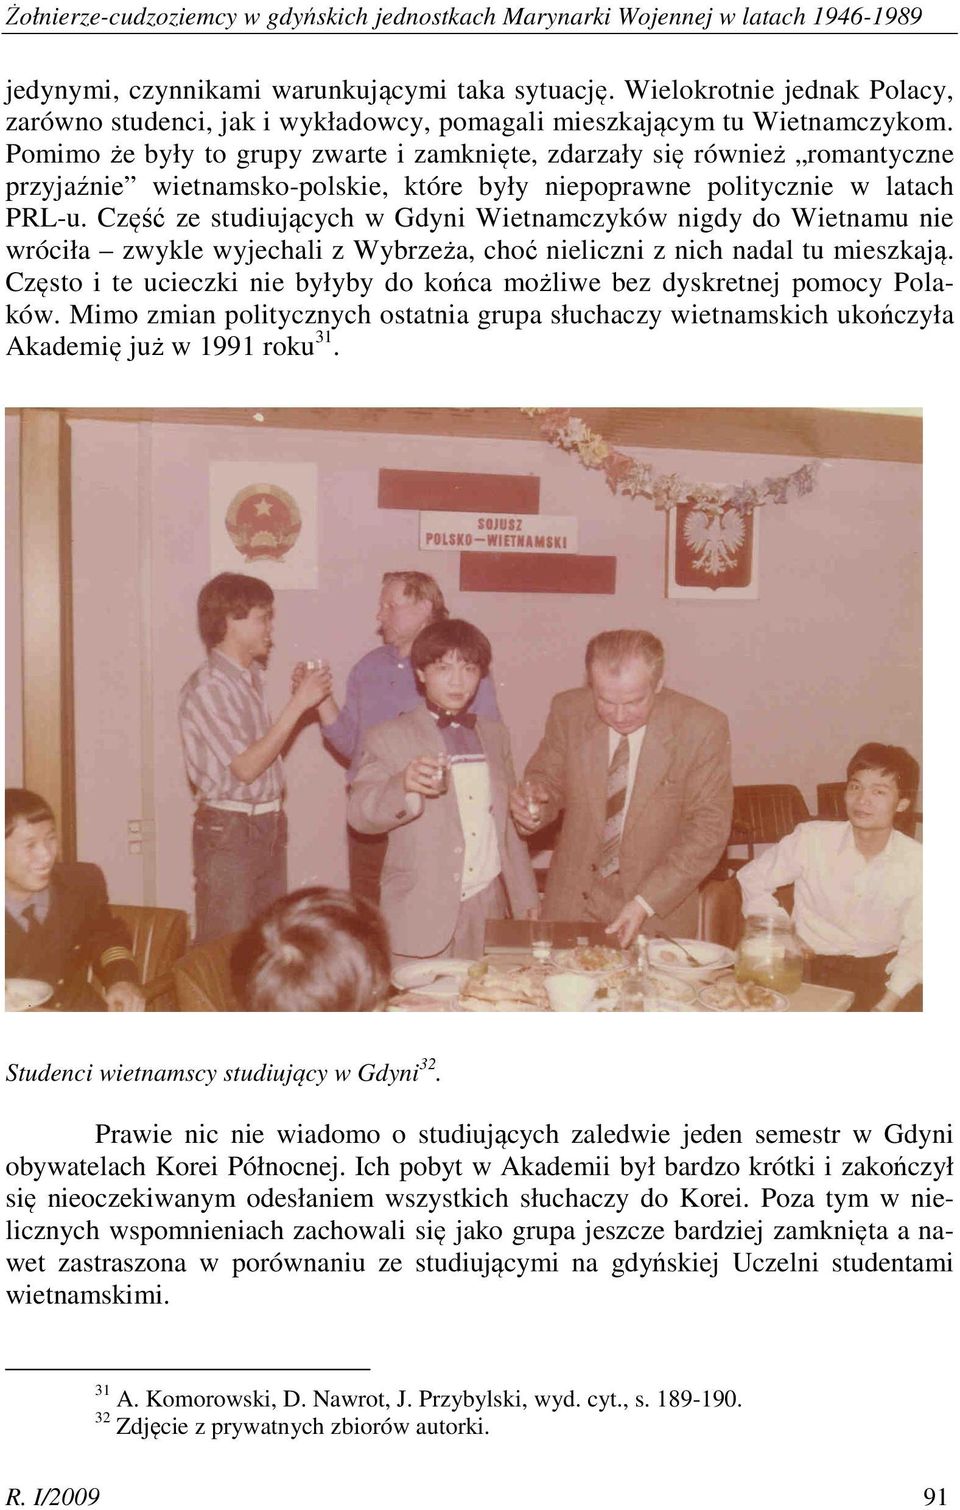 Pomimo że były to grupy zwarte i zamknięte, zdarzały się również romantyczne przyjaźnie wietnamsko-polskie, które były niepoprawne politycznie w latach PRL-u.